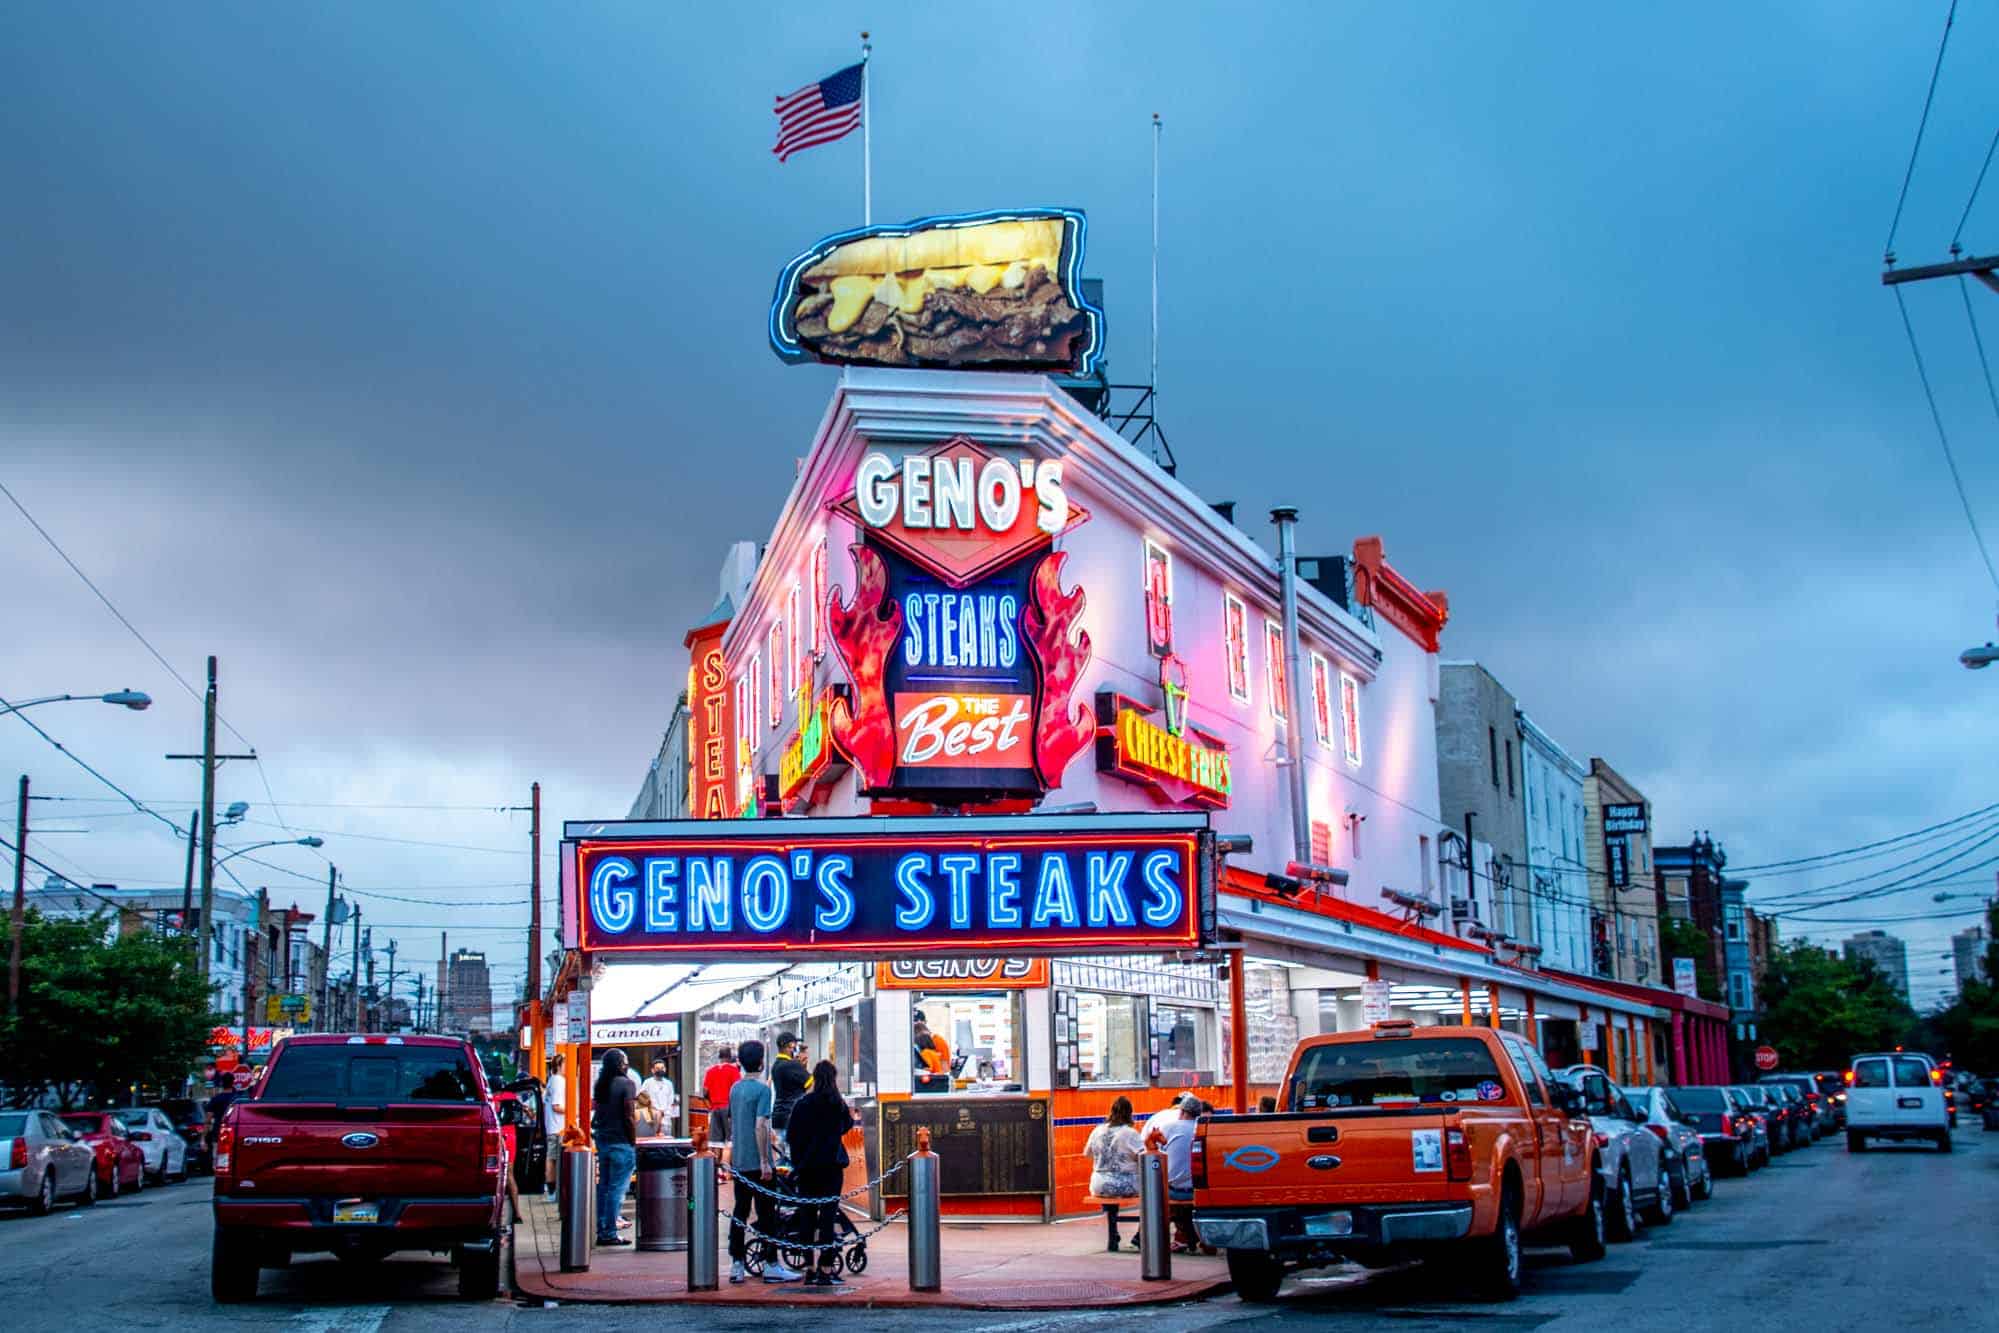 Geno's steaks